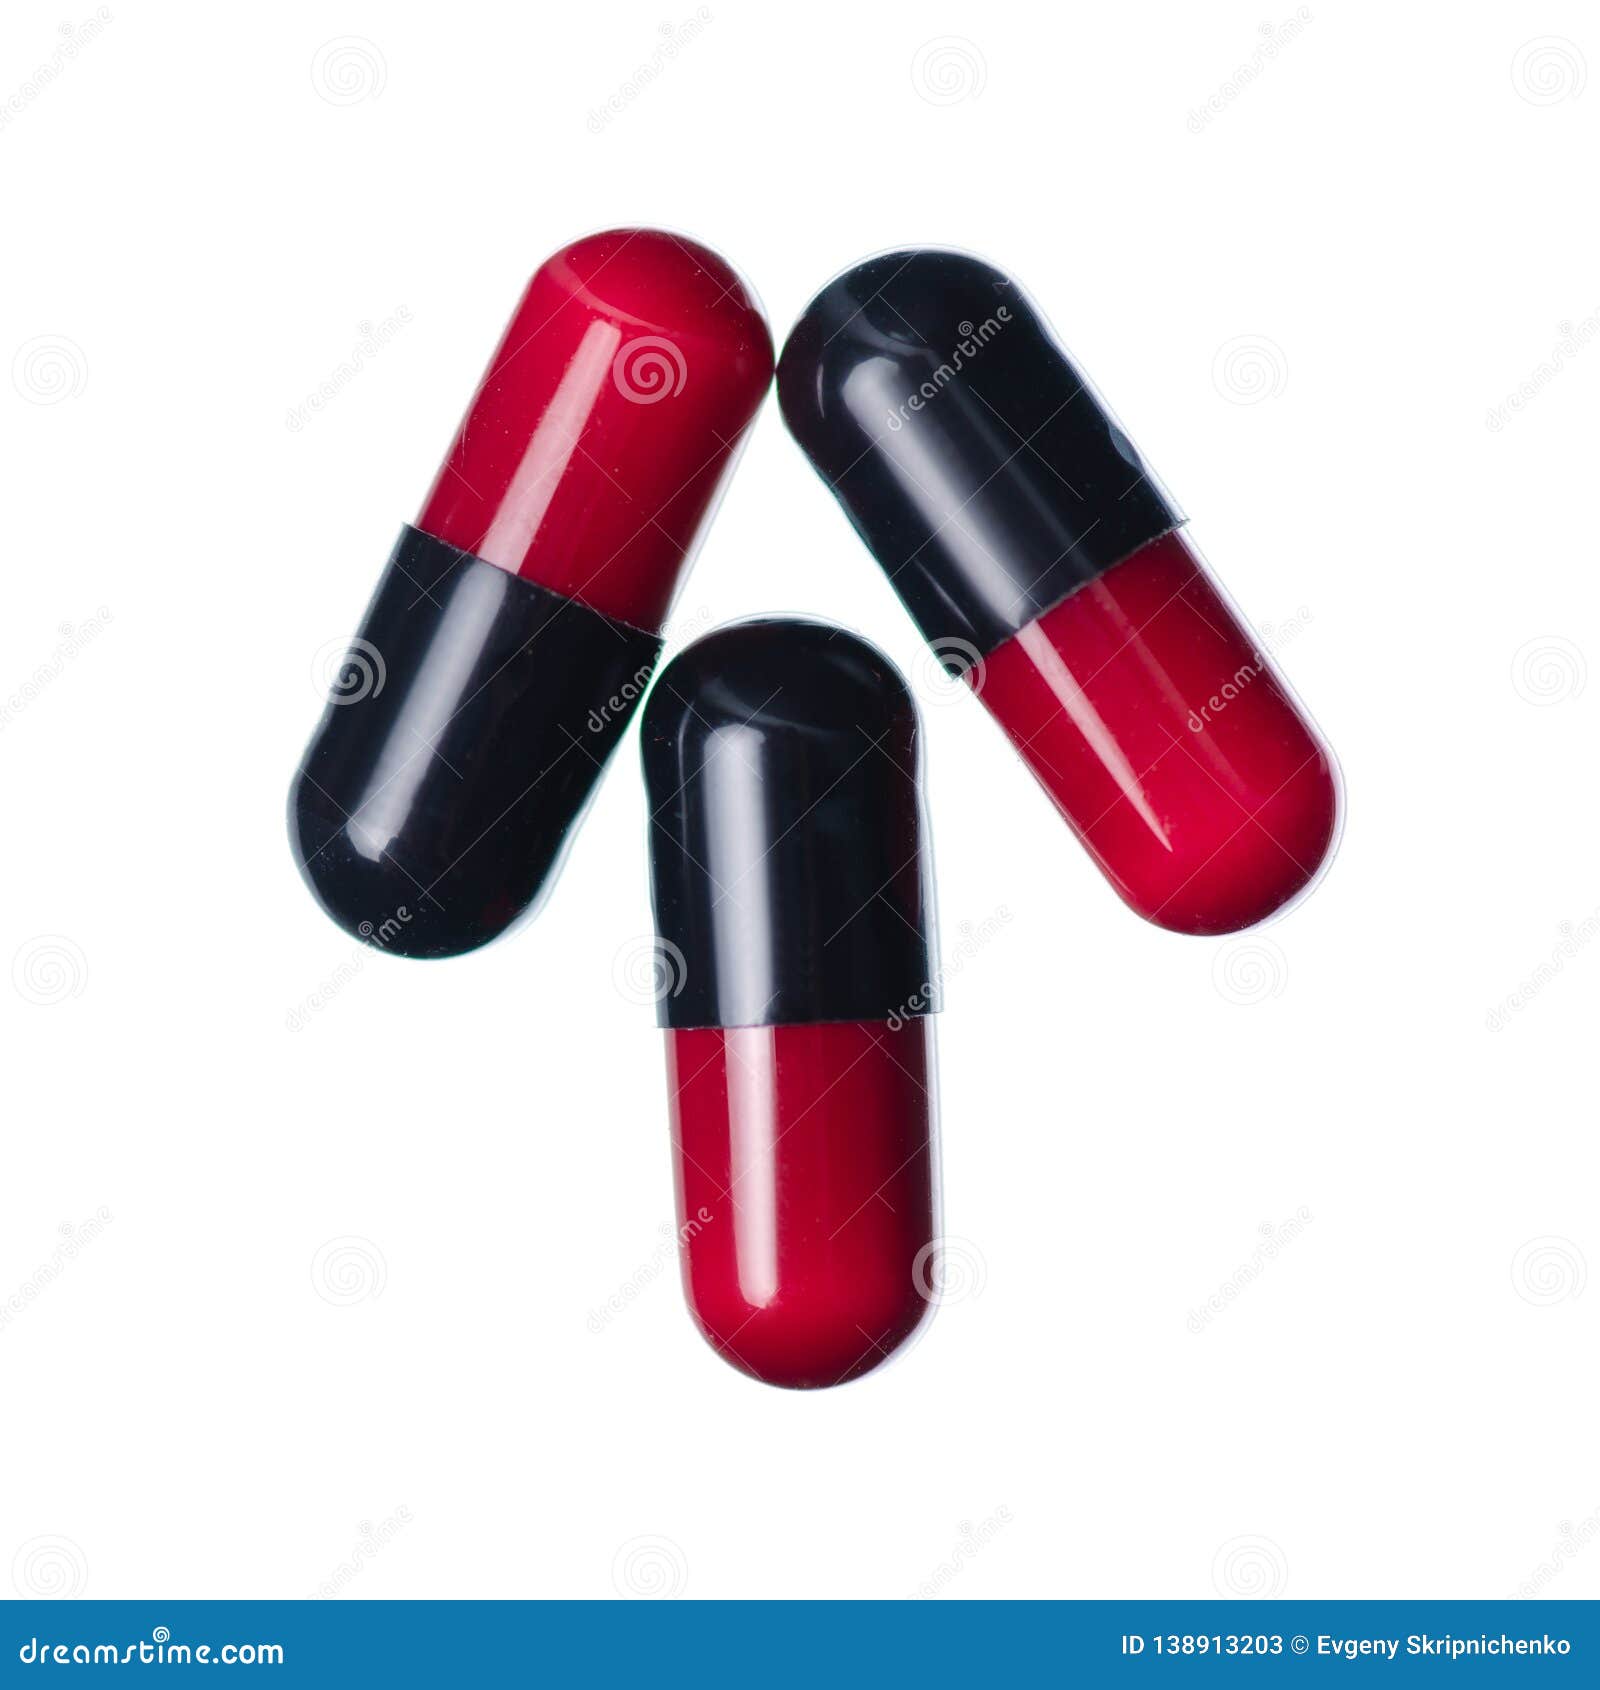 Красная таблетка для мужчин. Красно черные капсулы. Черно красные капсулы. Капсулы красно черного цвета для потенции. Красно черные таблетки в капсулах.